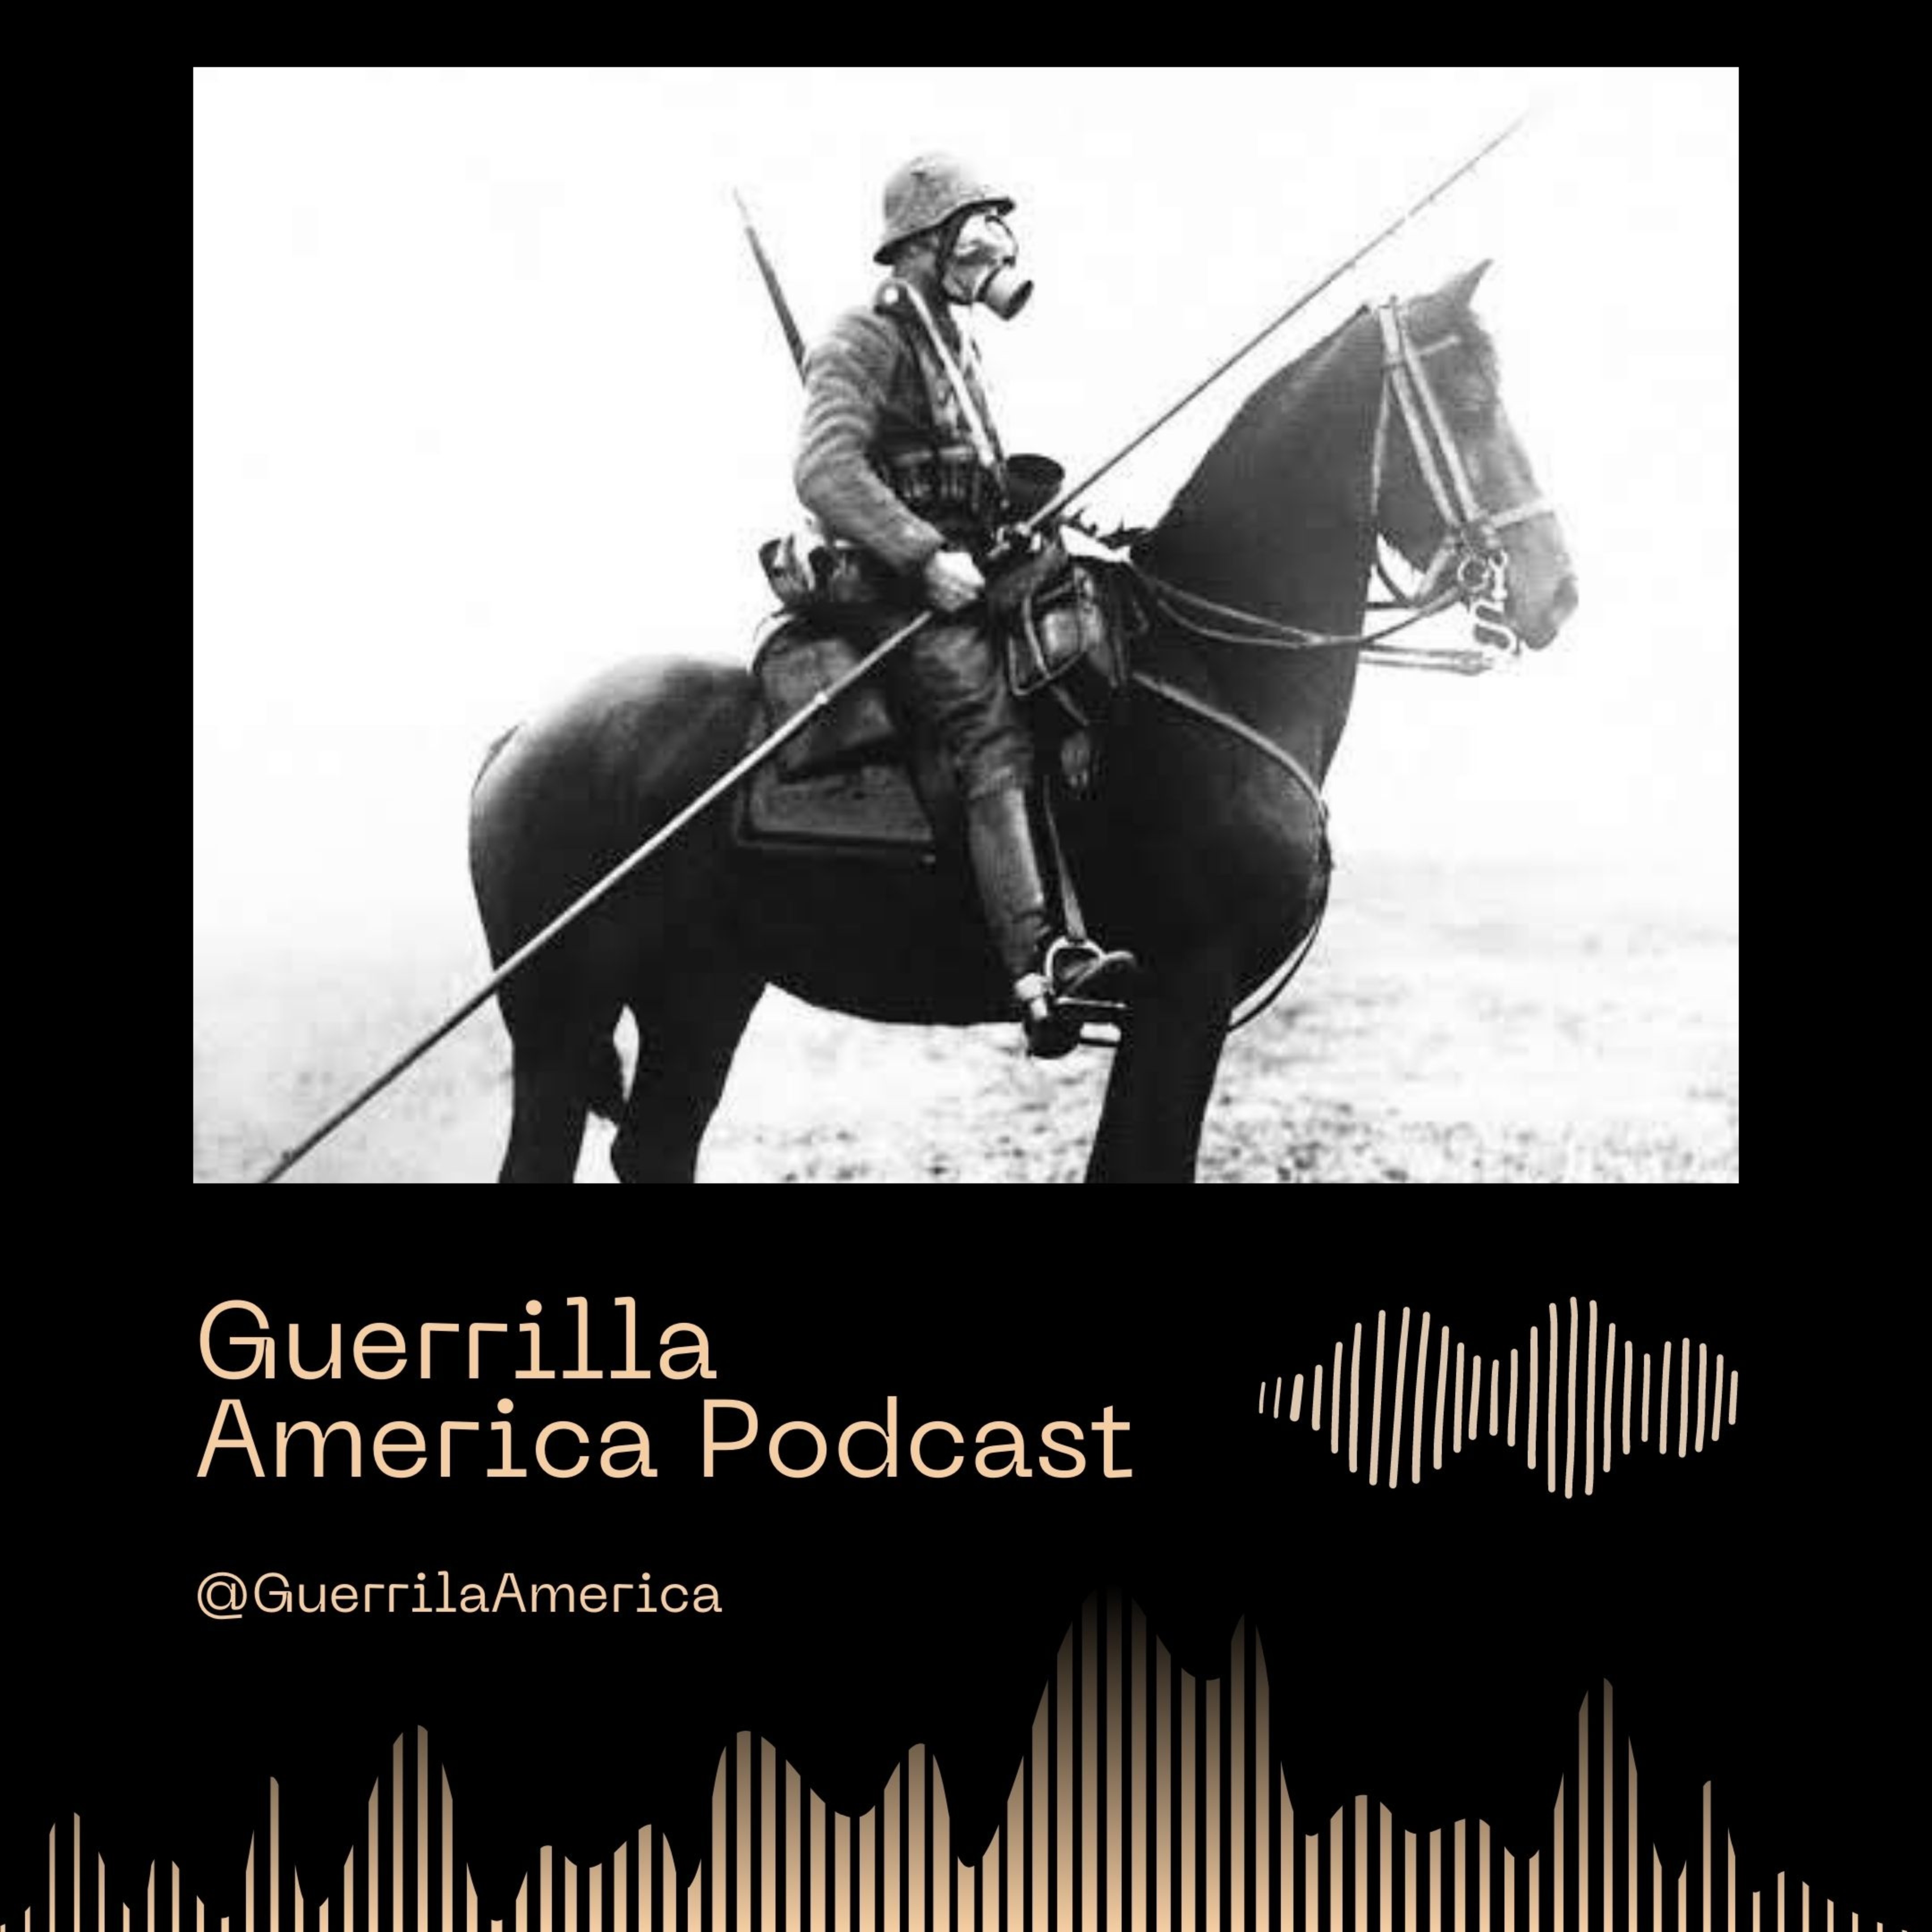 The Guerrilla America Podcast